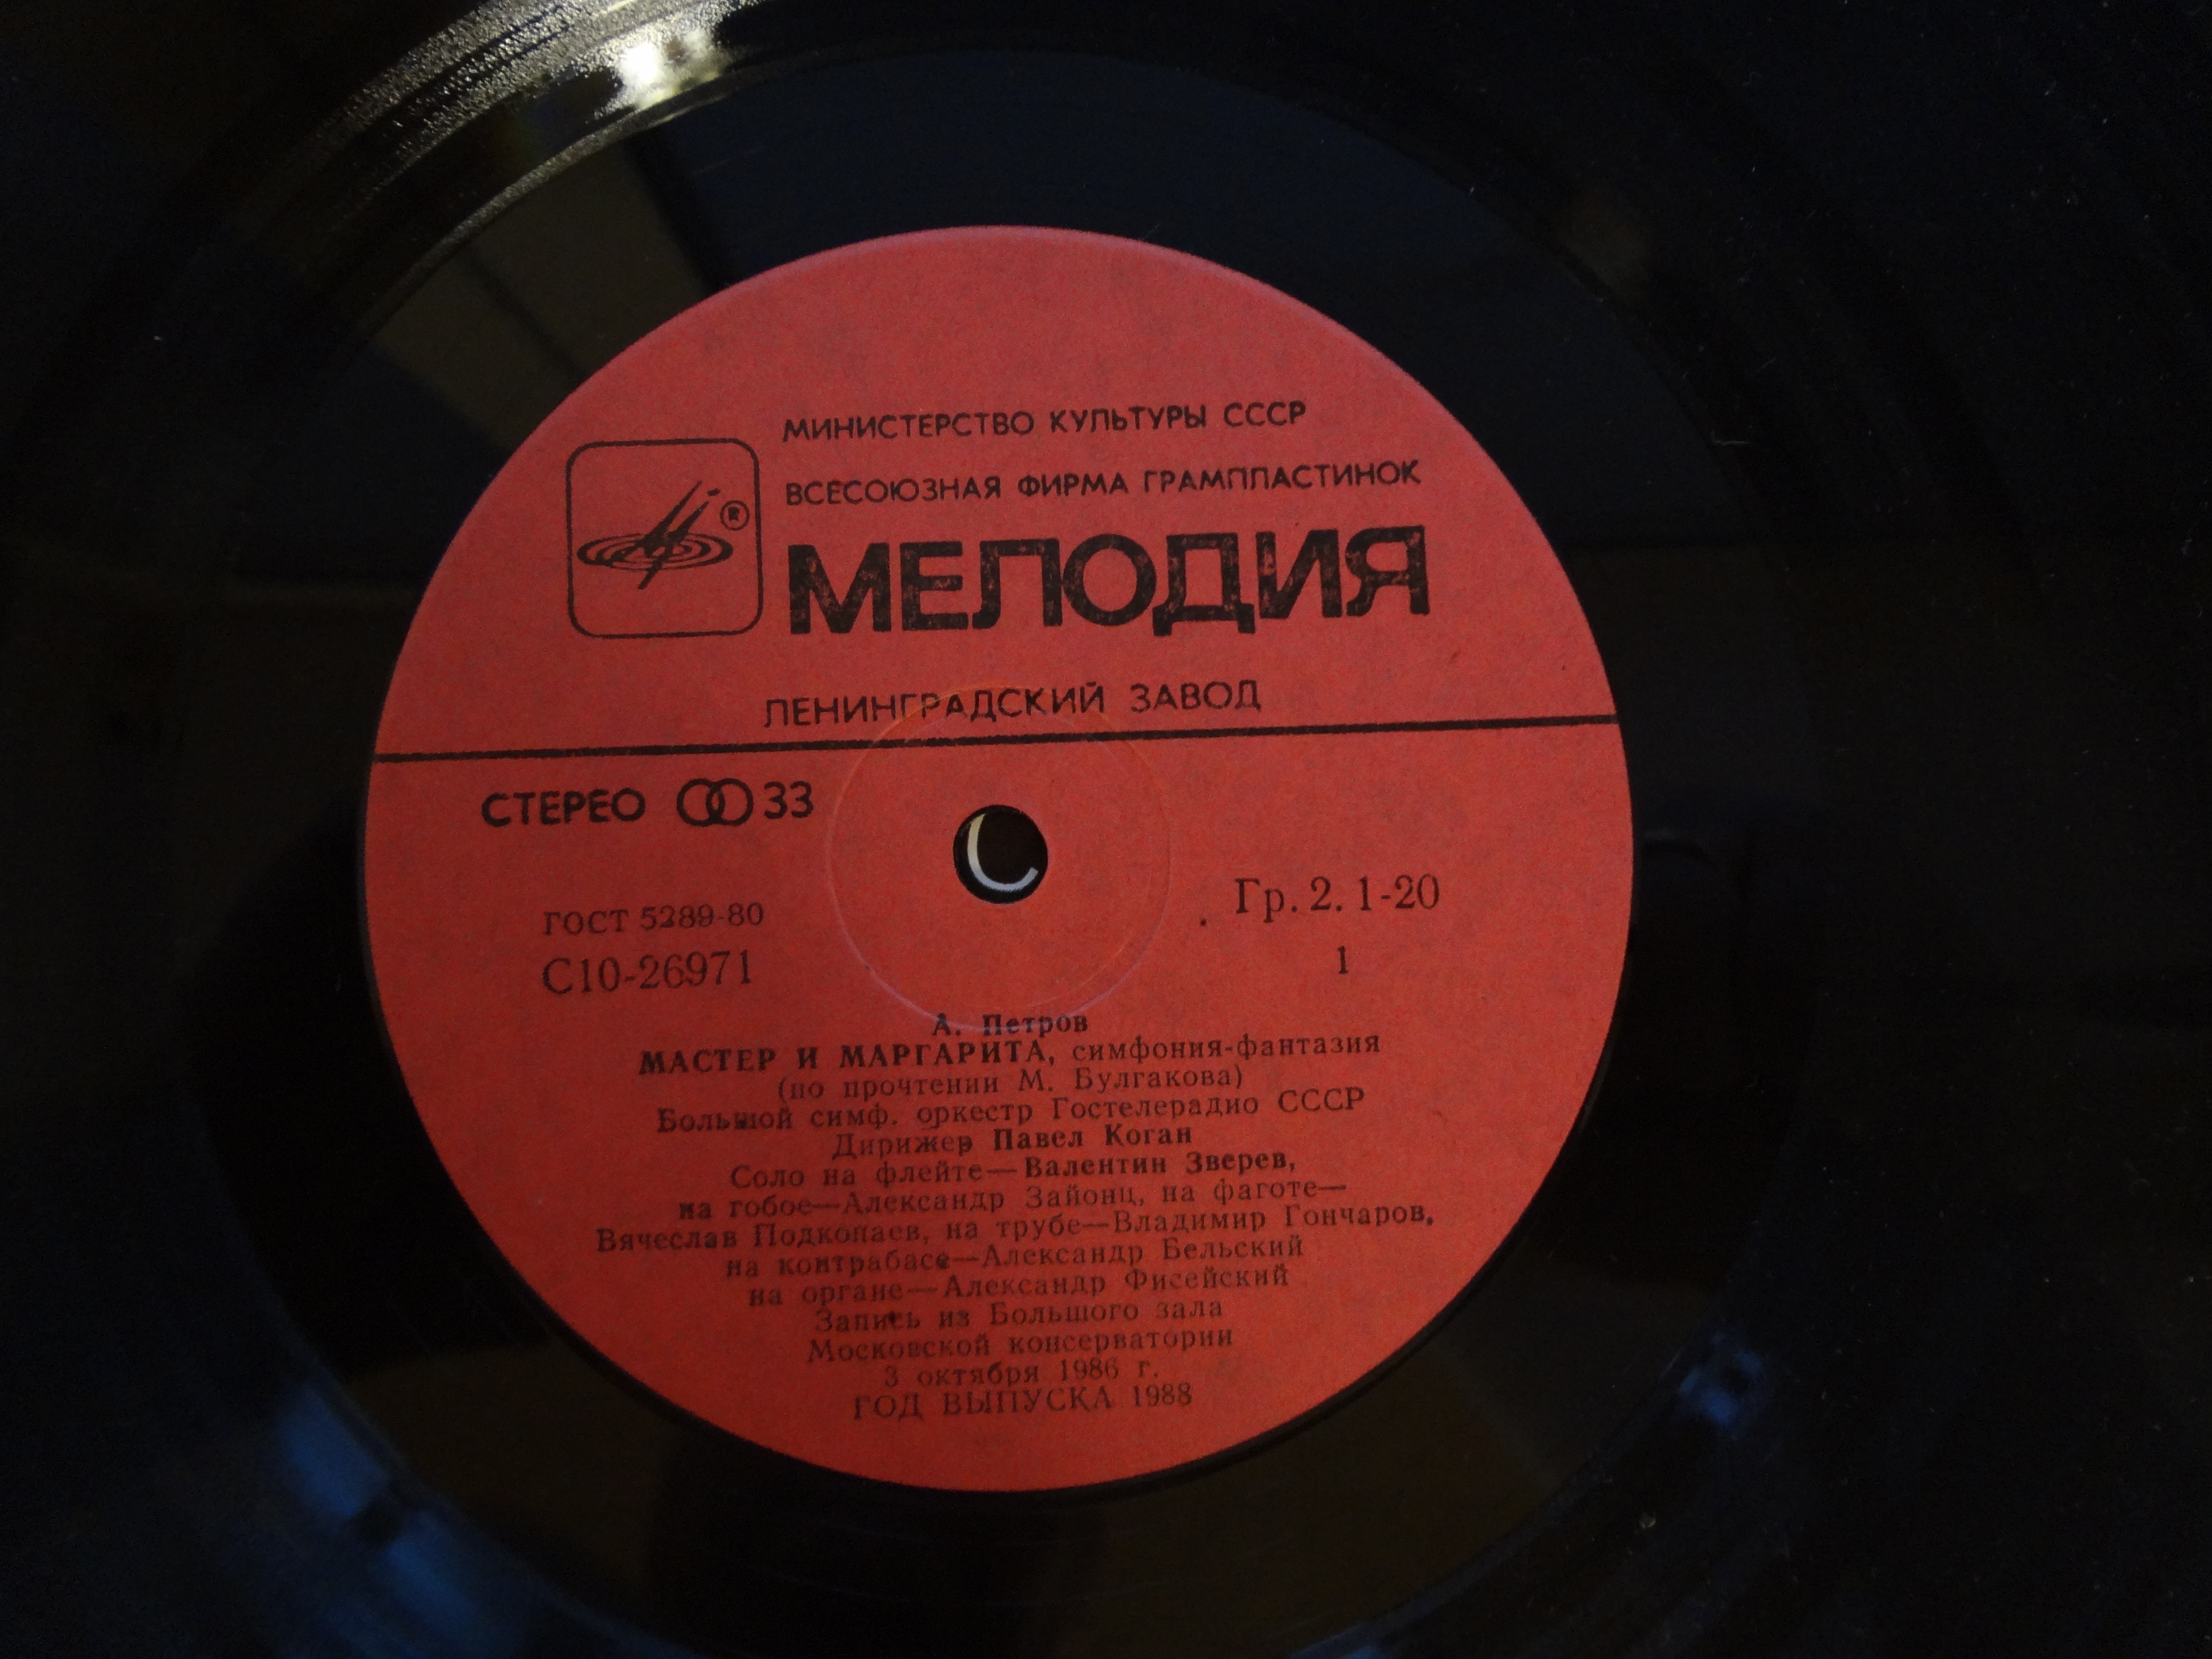 А. ПЕТРОВ (1930—2006). "Мастер и Маргарита"/Концерт для скрипки с оркестром